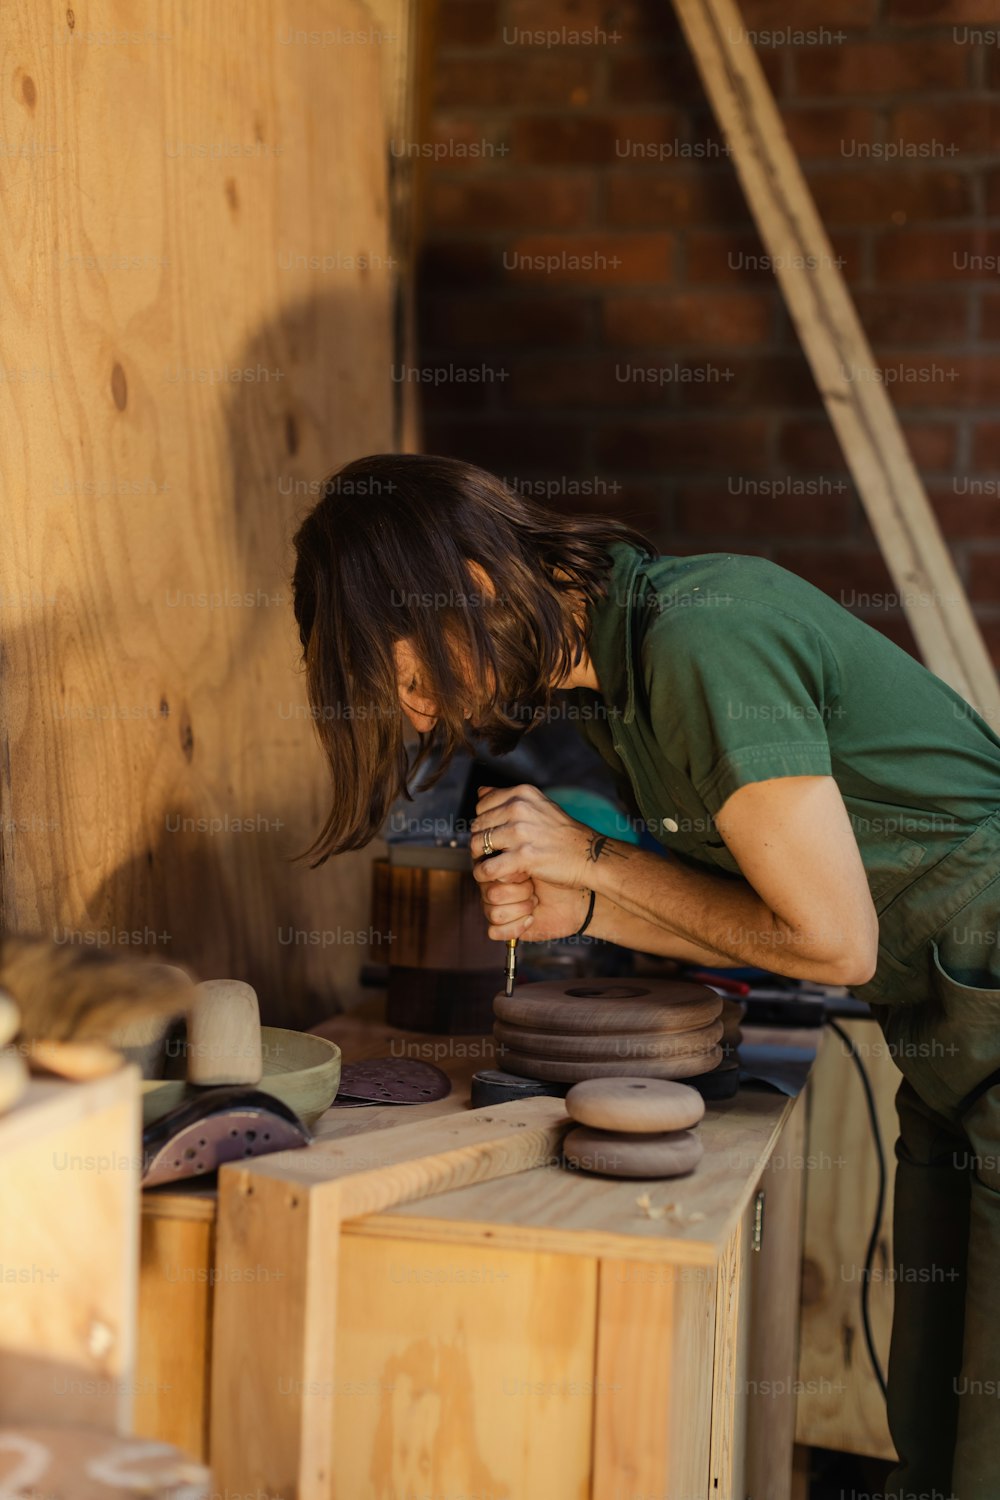 Un hombre trabajando en una pieza de cerámica